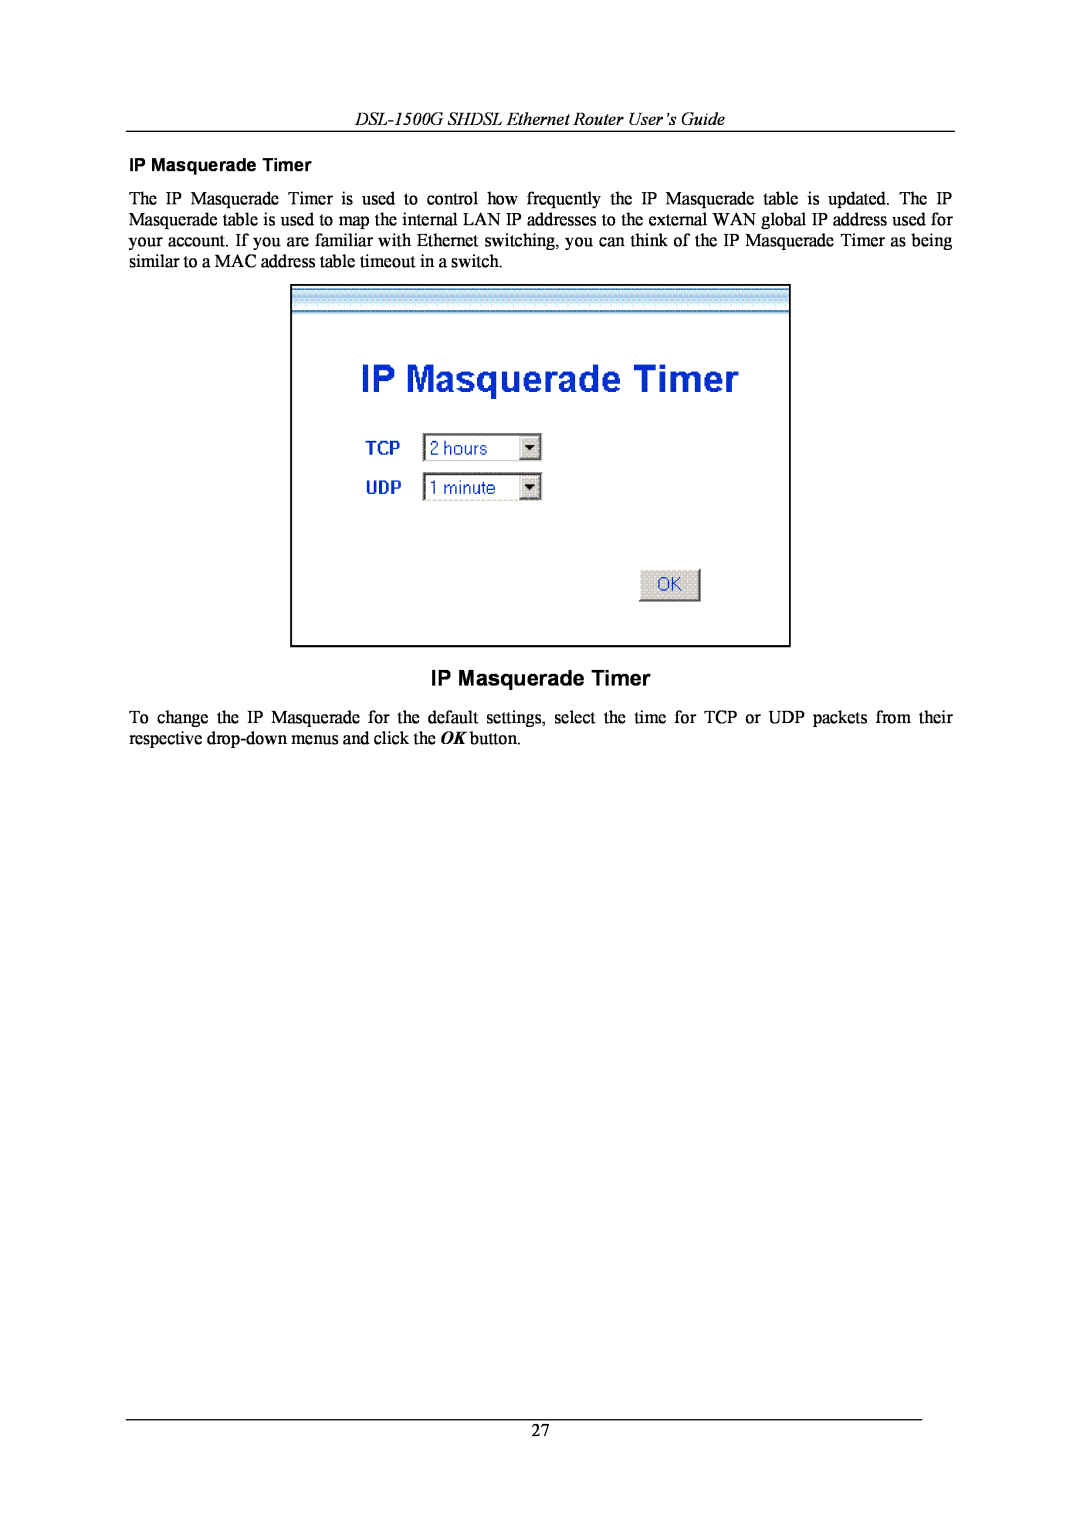 D-Link manual IP Masquerade Timer, DSL-1500G SHDSL Ethernet Router User’s Guide 